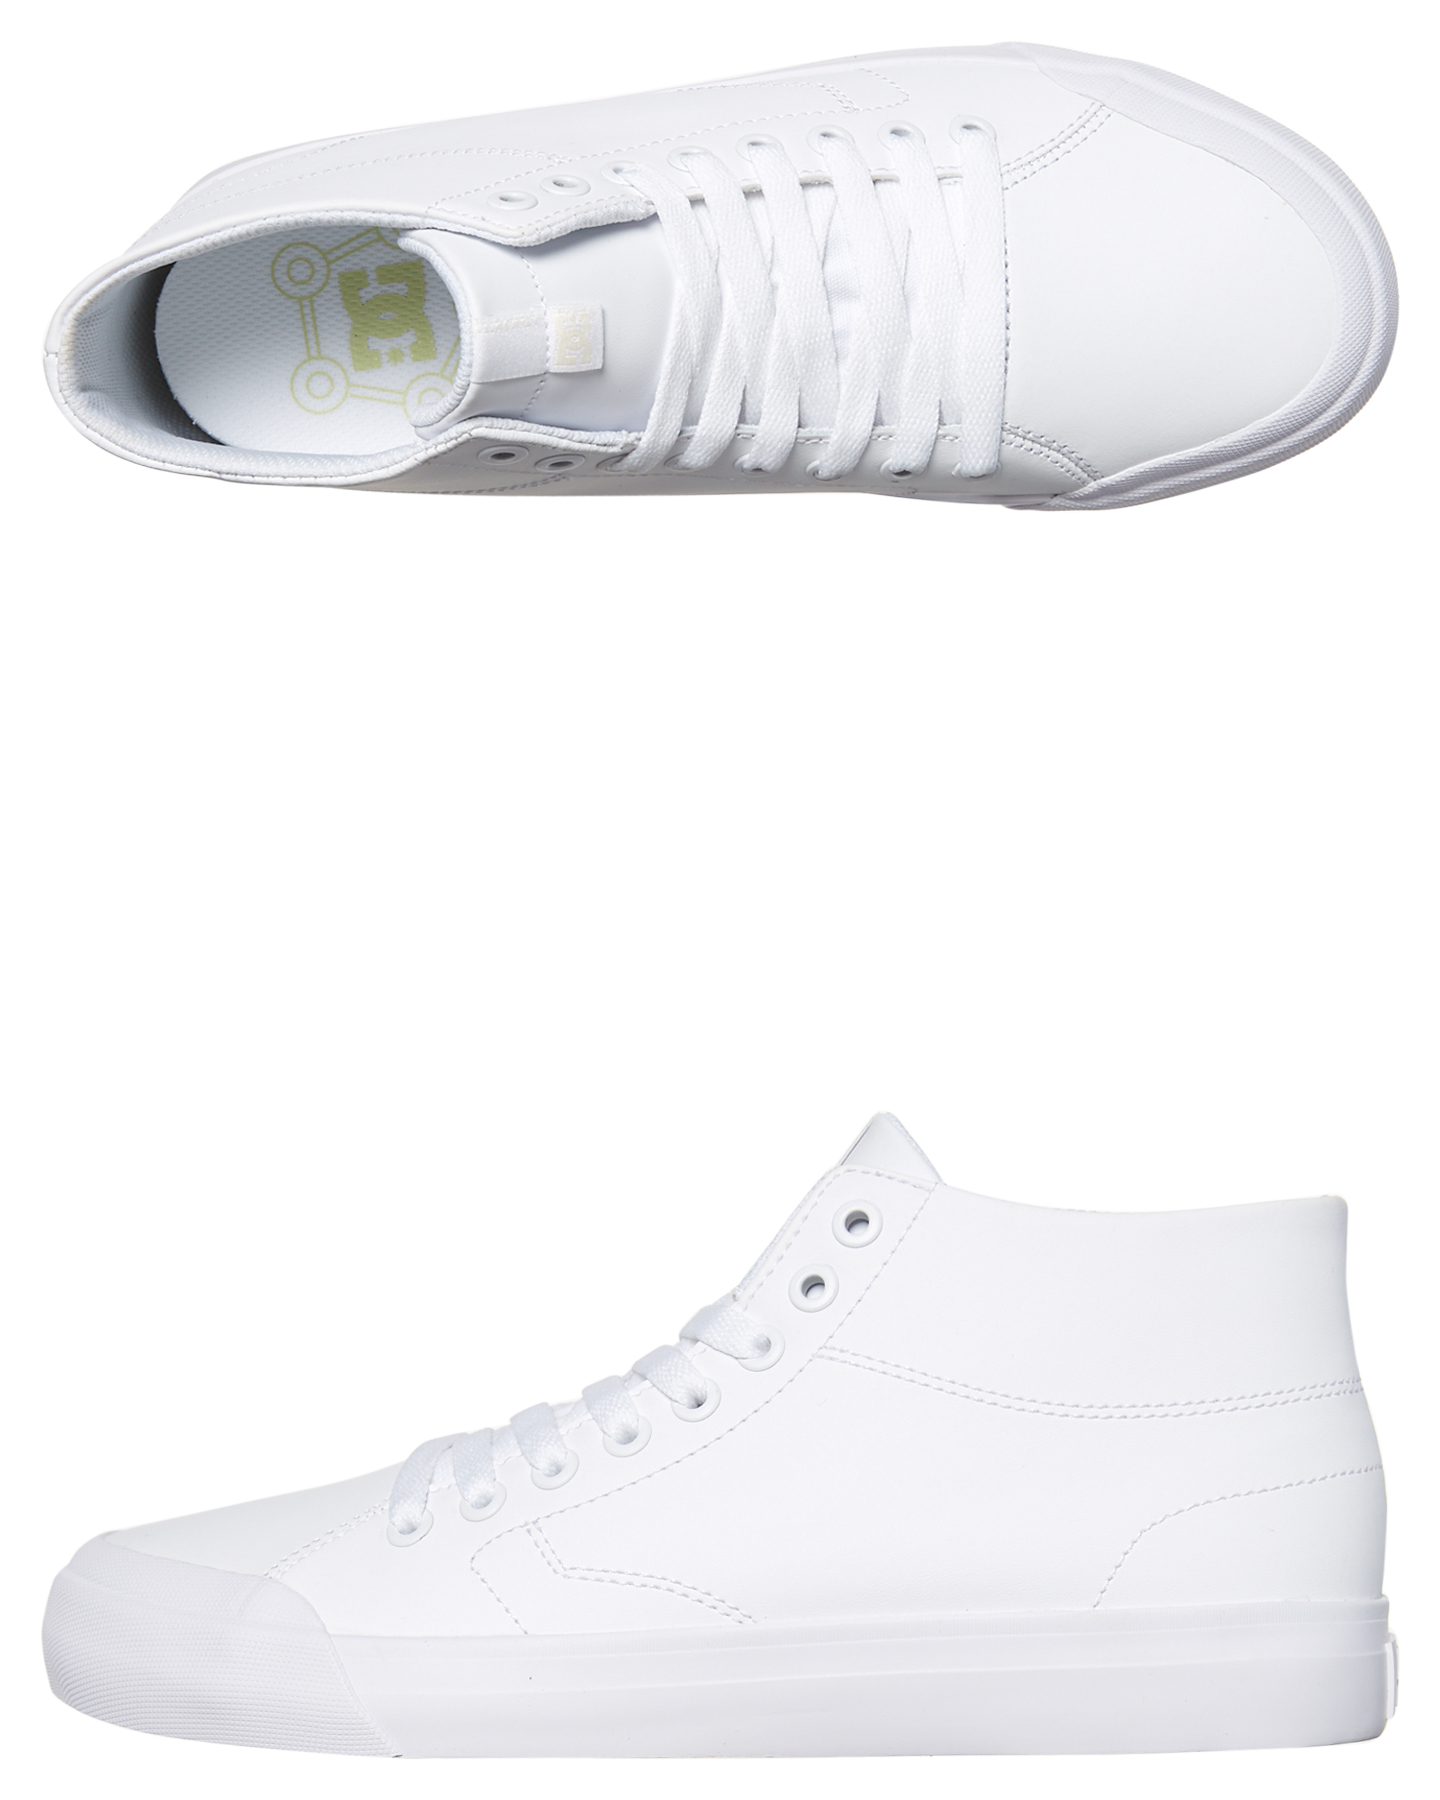 Dc Shoes Evan Smith Hi Zero - White 